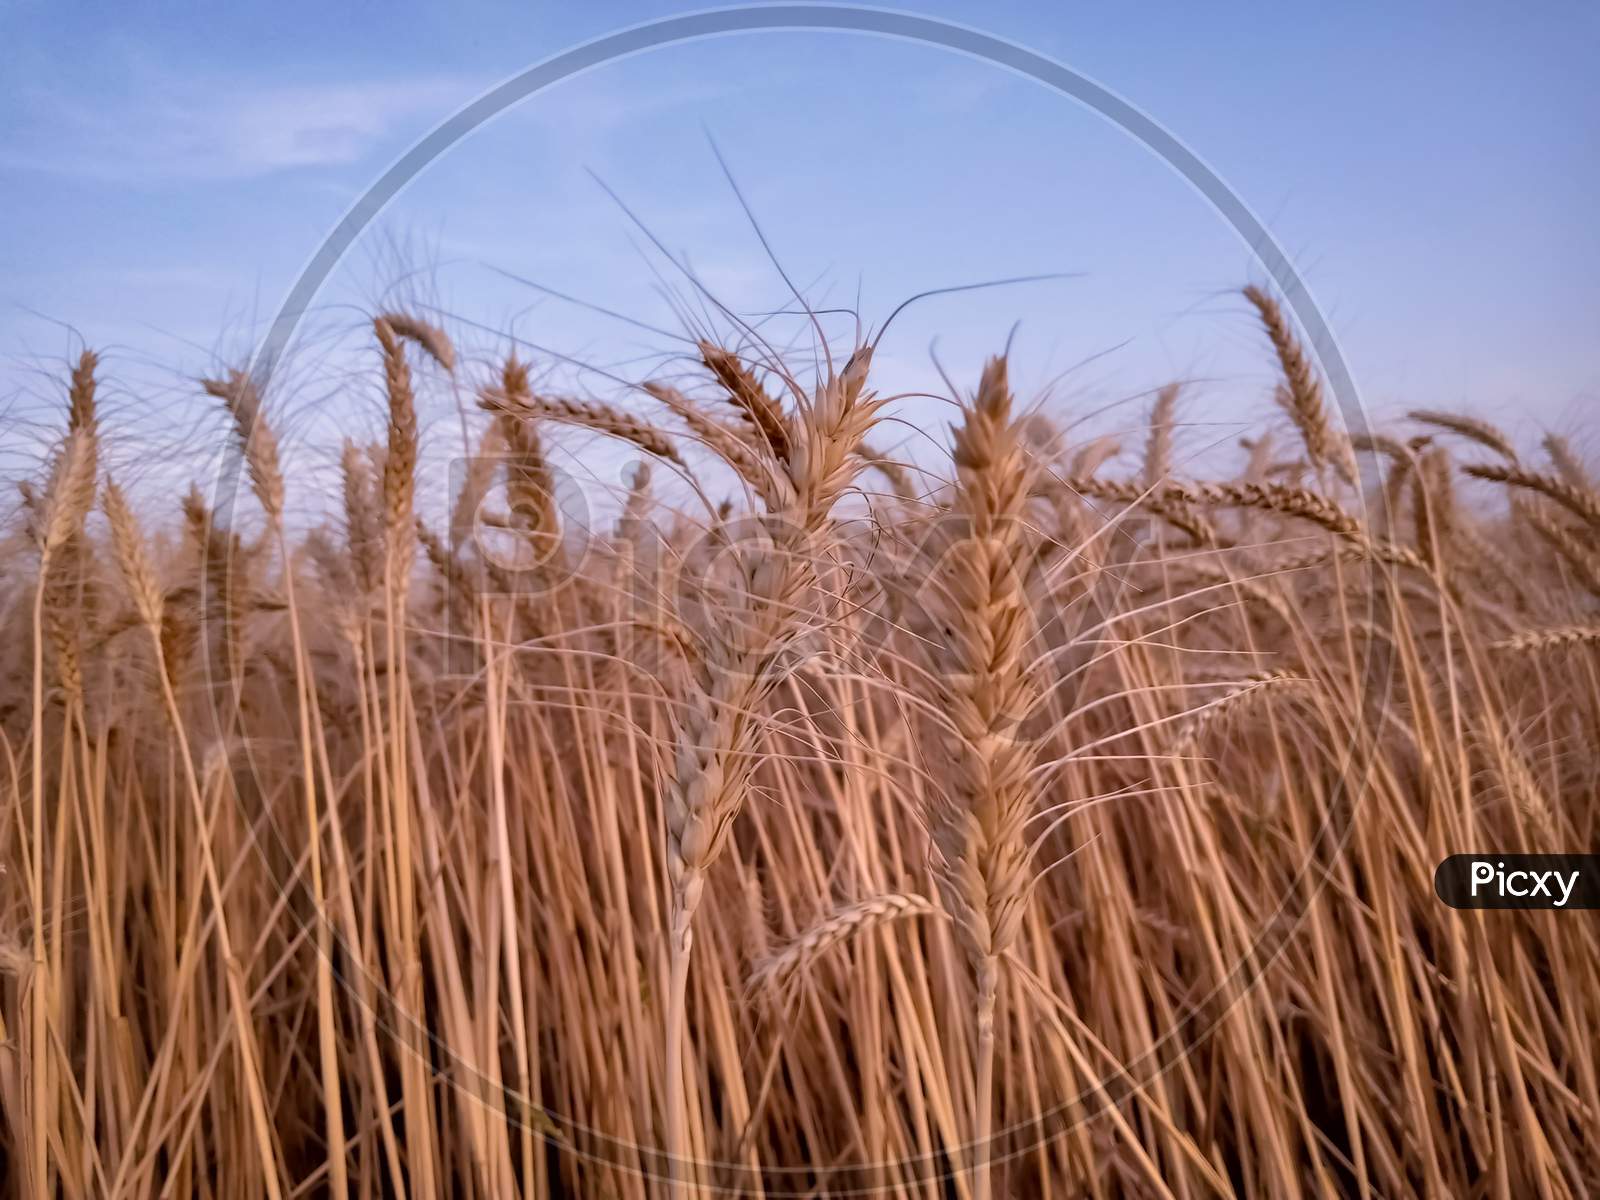 Wheat Ears In The Wind